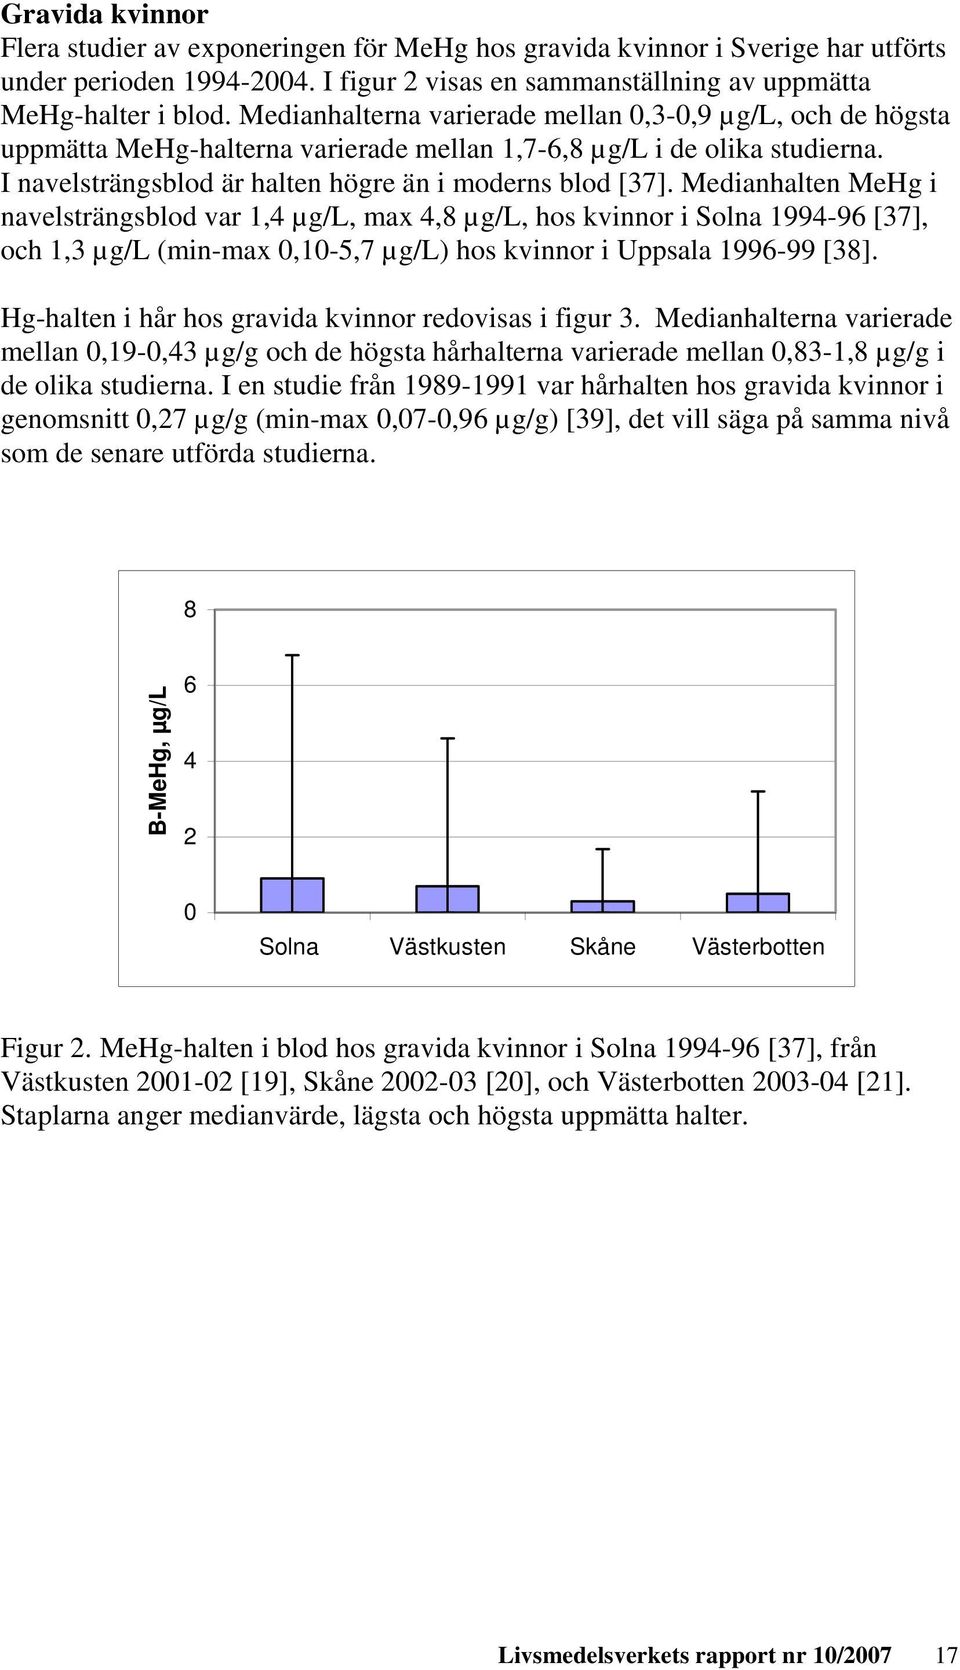 Medianhalten MeHg i navelsträngsblod var 1,4 µg/l, max 4,8 µg/l, hos kvinnor i Solna 1994-96 [37], och 1,3 µg/l (min-max 0,10-5,7 µg/l) hos kvinnor i Uppsala 1996-99 [38].